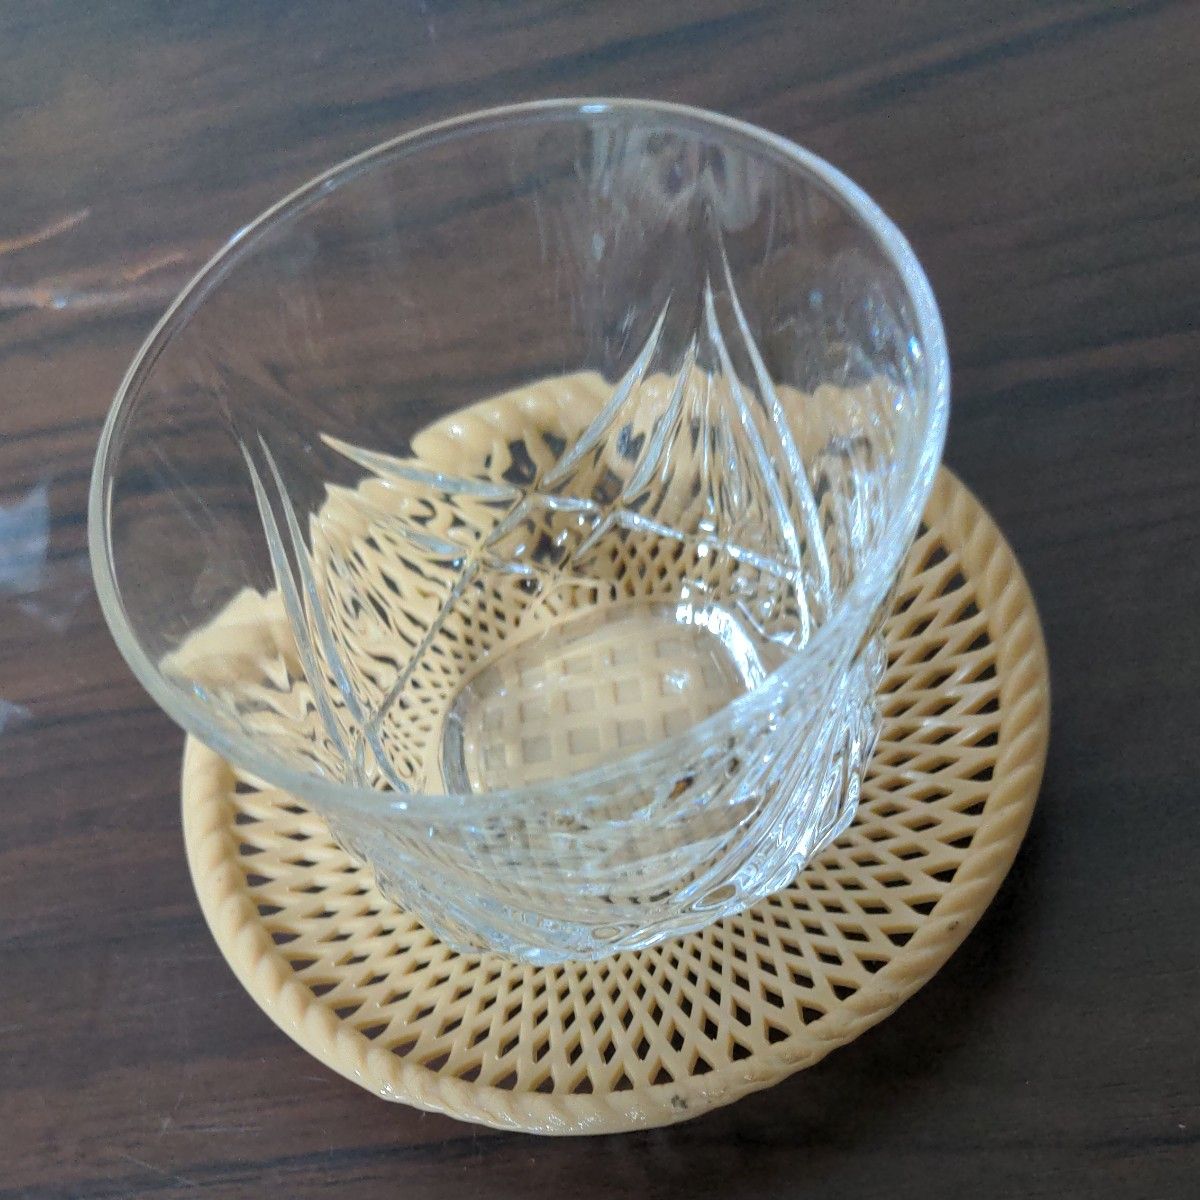 アデリアグラス  石塚ガラス株式会社  パルム冷茶用ガラスのコップ５組セット。Sサイズ  ポリエチレン製茶托付き  未使用品   